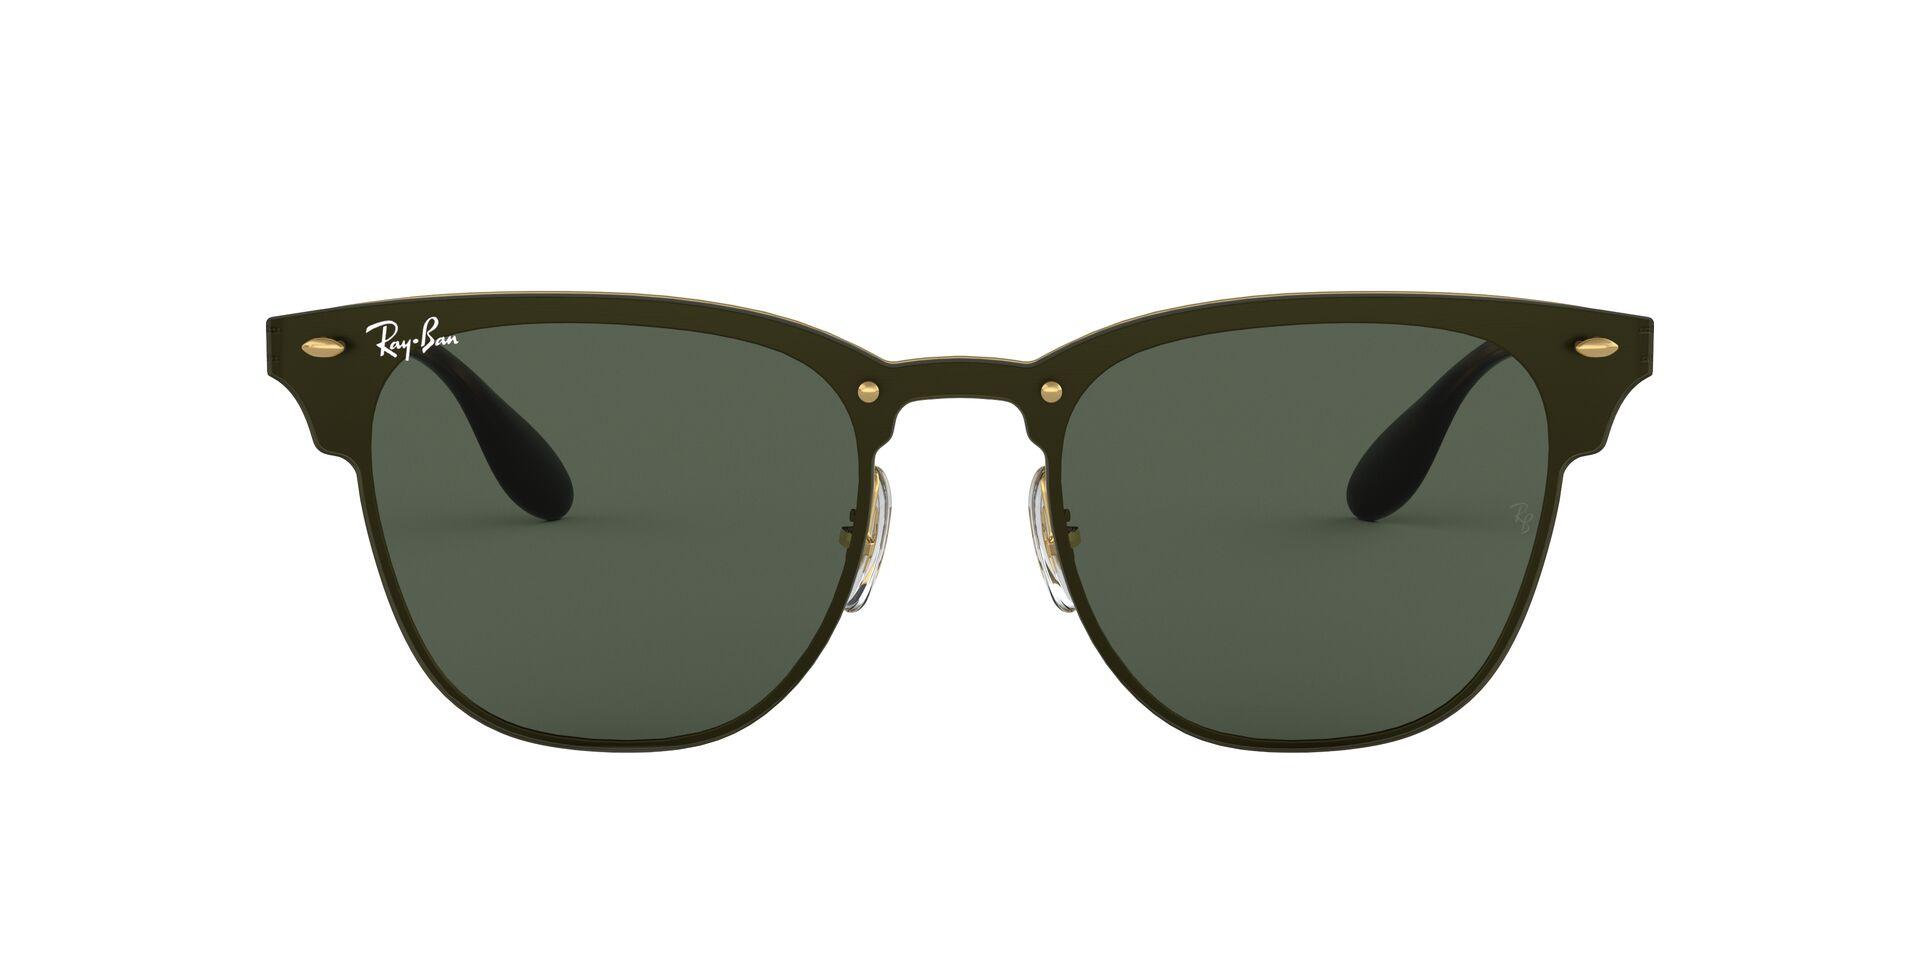 Mắt Kính RAY-BAN BLAZE CLUBMASTER - RB3576N 043/71 -Sunglasses